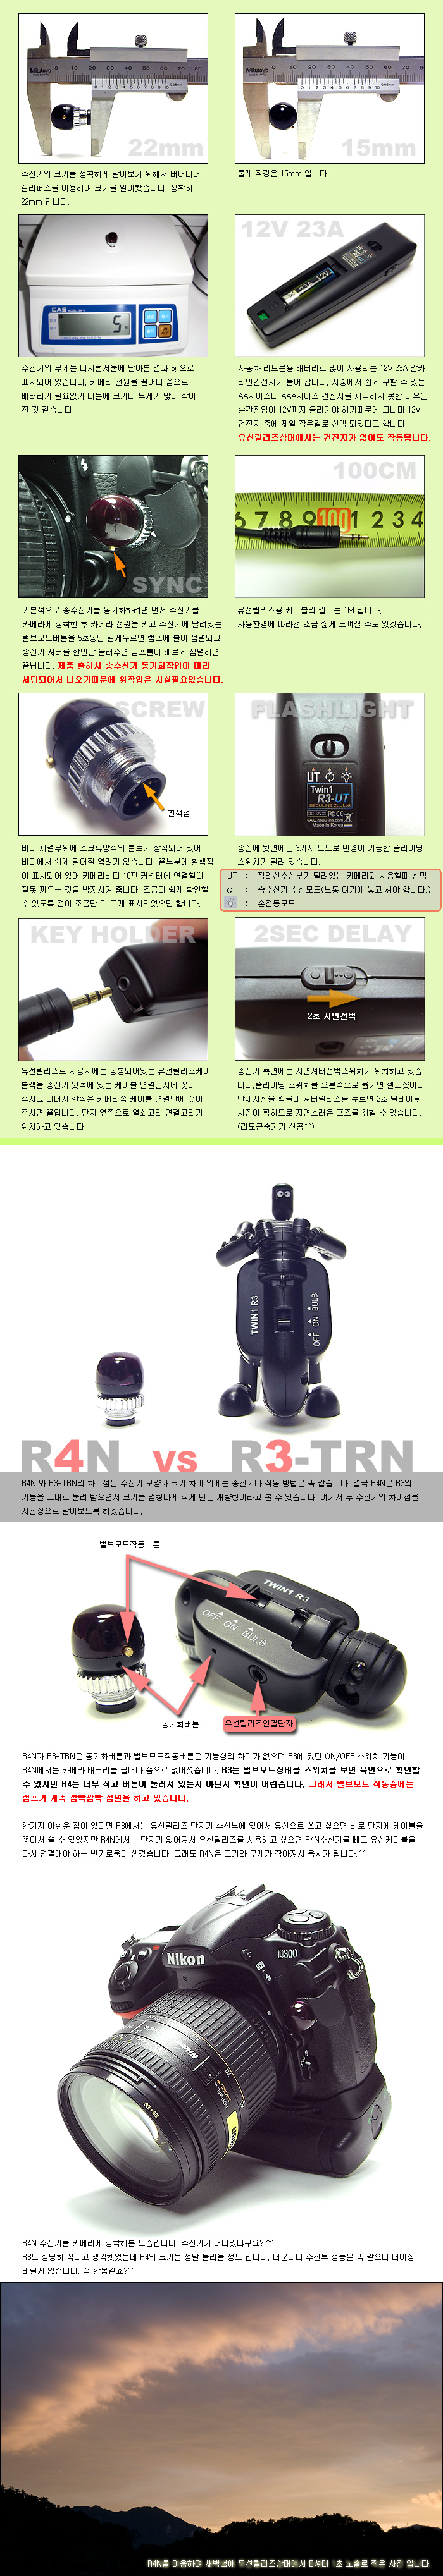 r4n-2.jpg